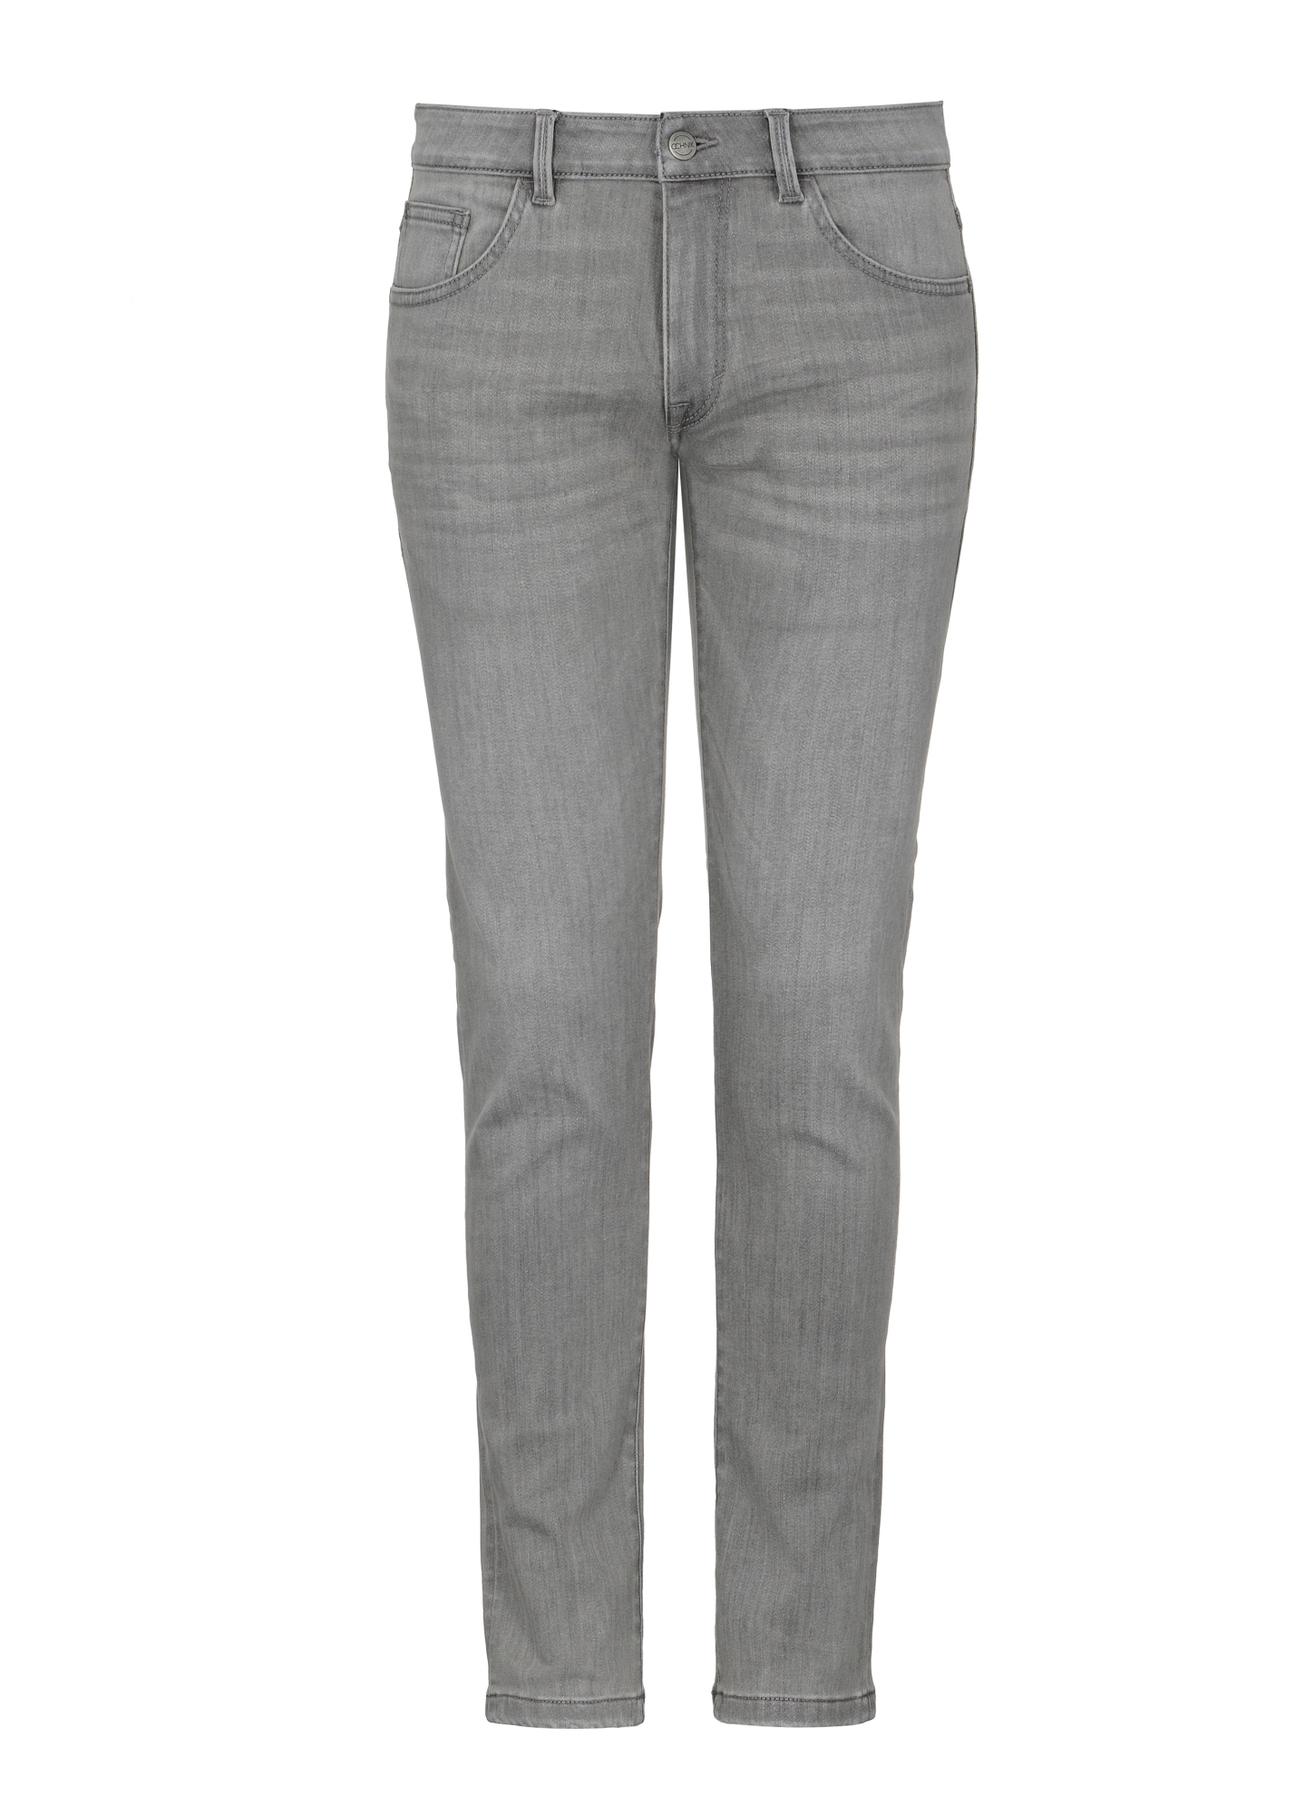 Szare spodnie jeansowe męskie JEAMT-0020-91(Z23)